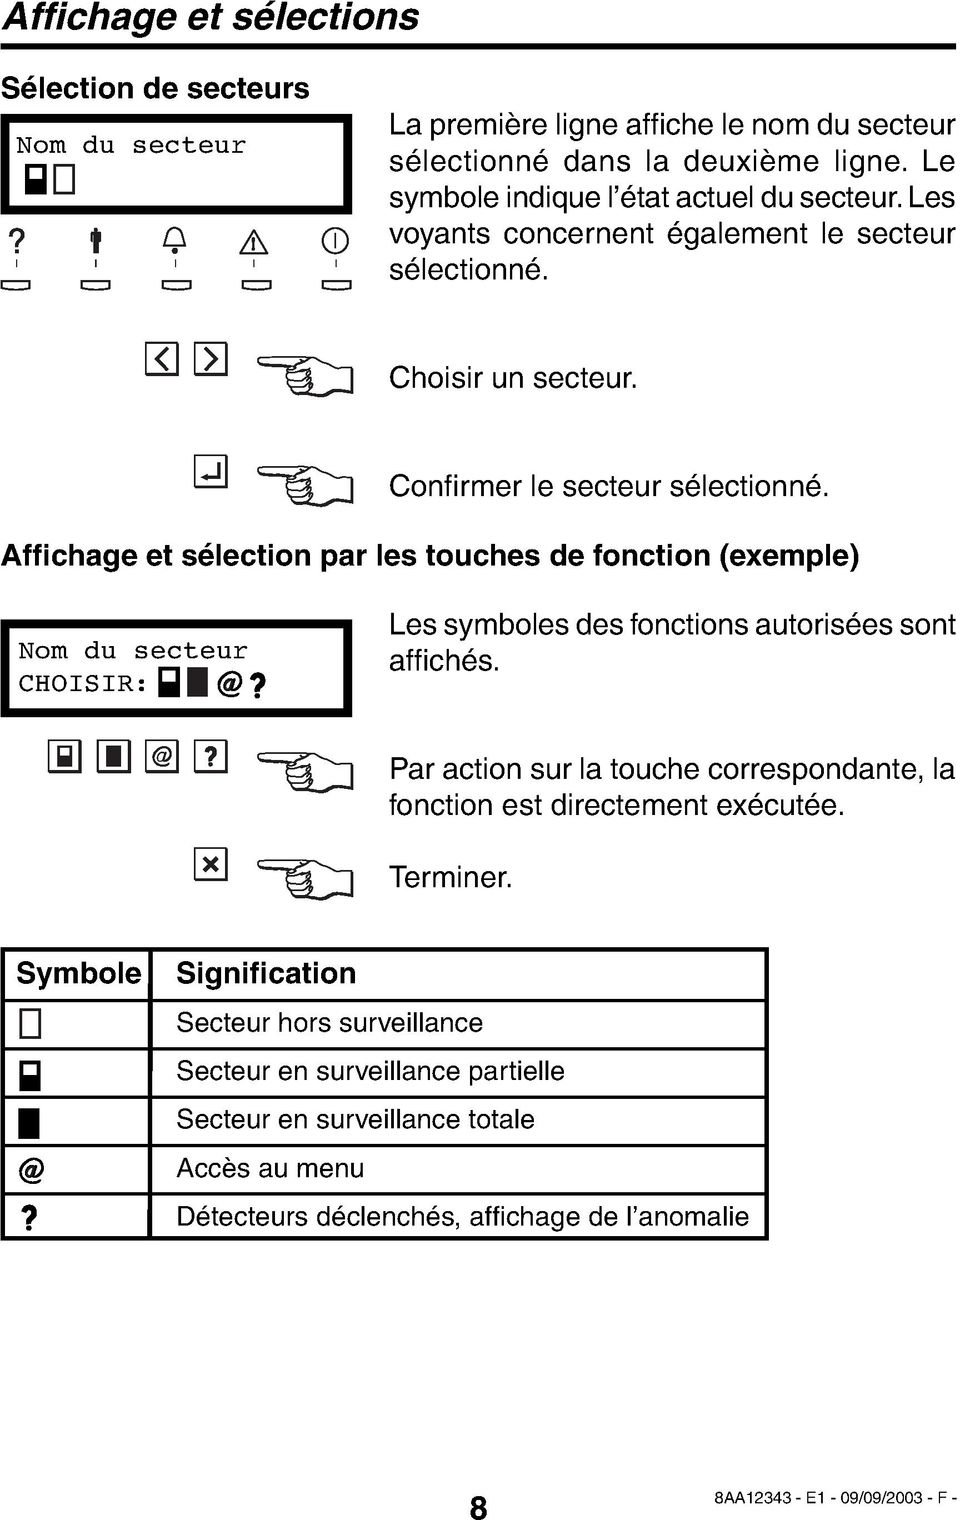 Affichage et sélection par les touches de fonction (exemple) Nom du secteur CHOISIR: Les symboles des fonctions autorisées sont affi chés.